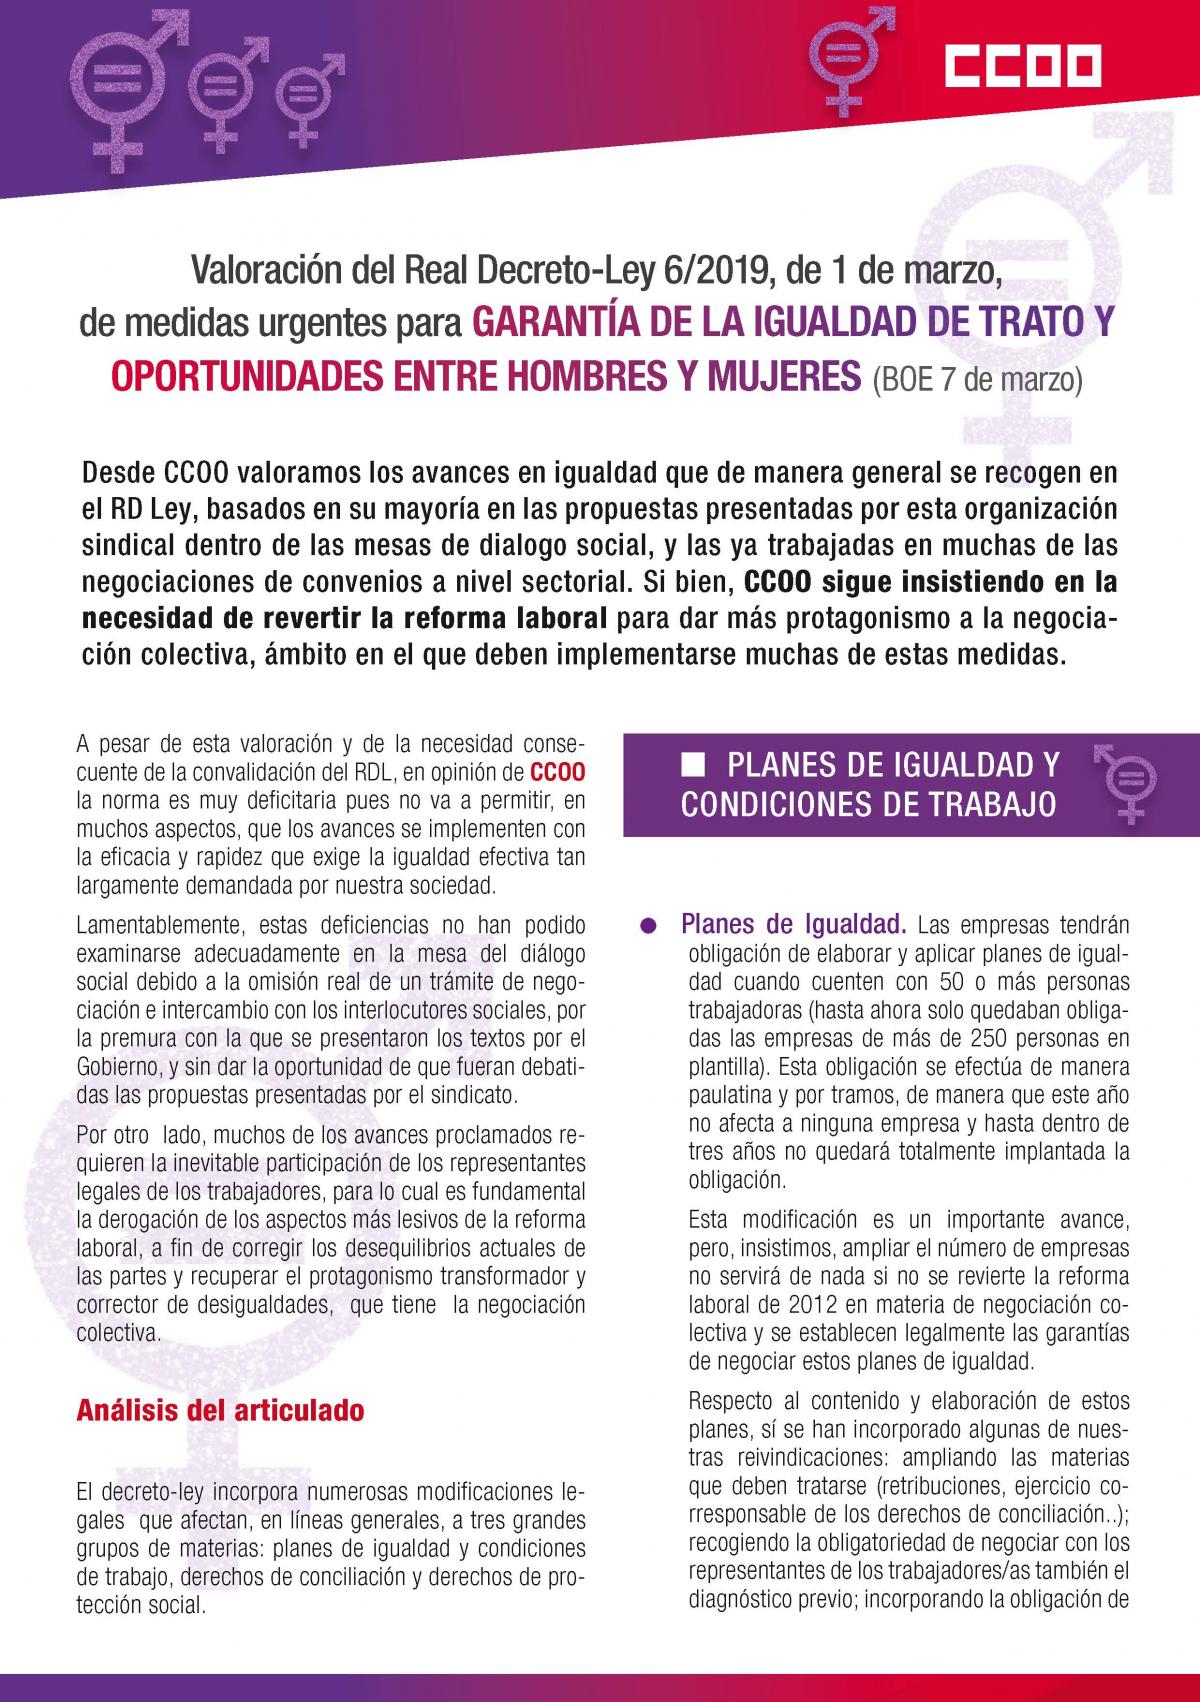 Valoración del Real Decreto-Ley 6/2019, de 1 de marzo, de medidas urgentes para garantía de la igualdad de trato yoportunidades entre hombrfes y mujeres (BOE 7 de marzo).